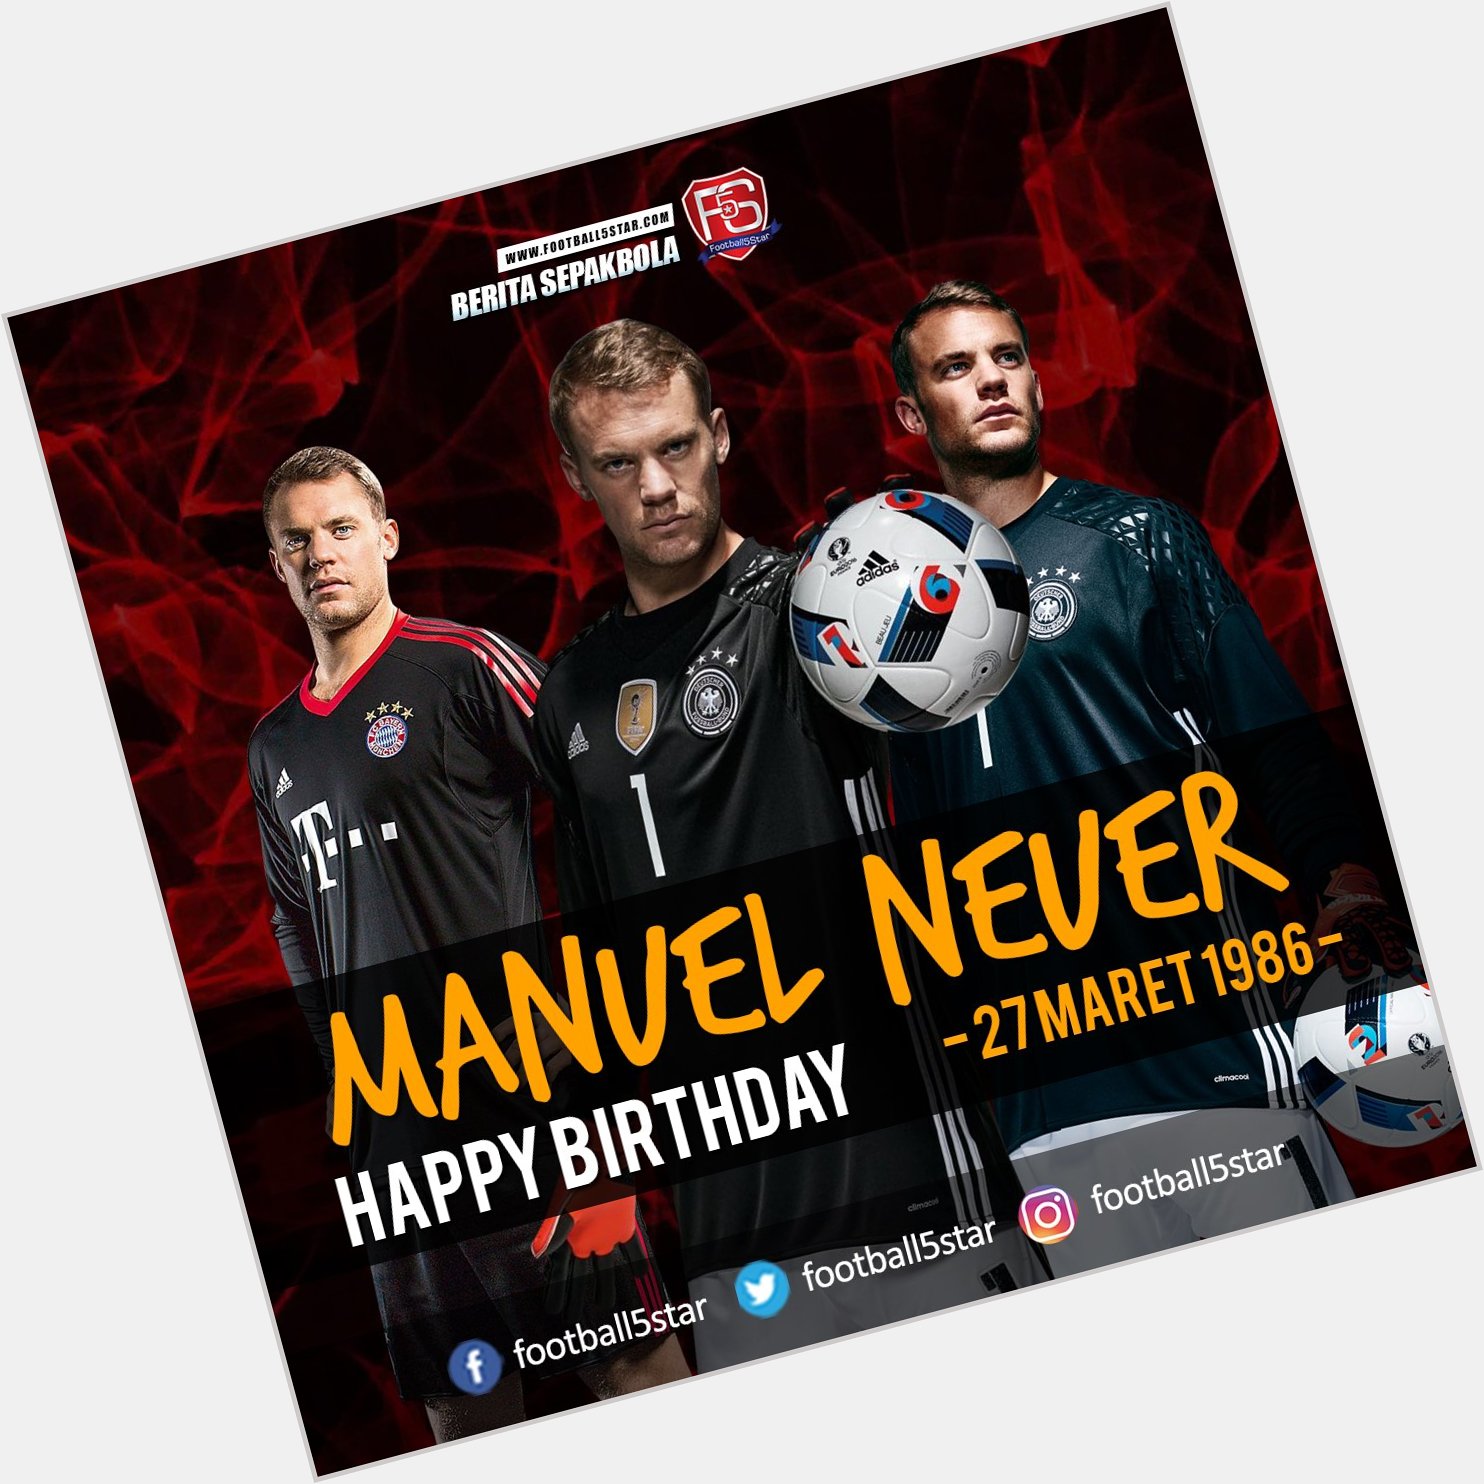 Happy Birthday Manuel Neuer 27 Maret 1986 